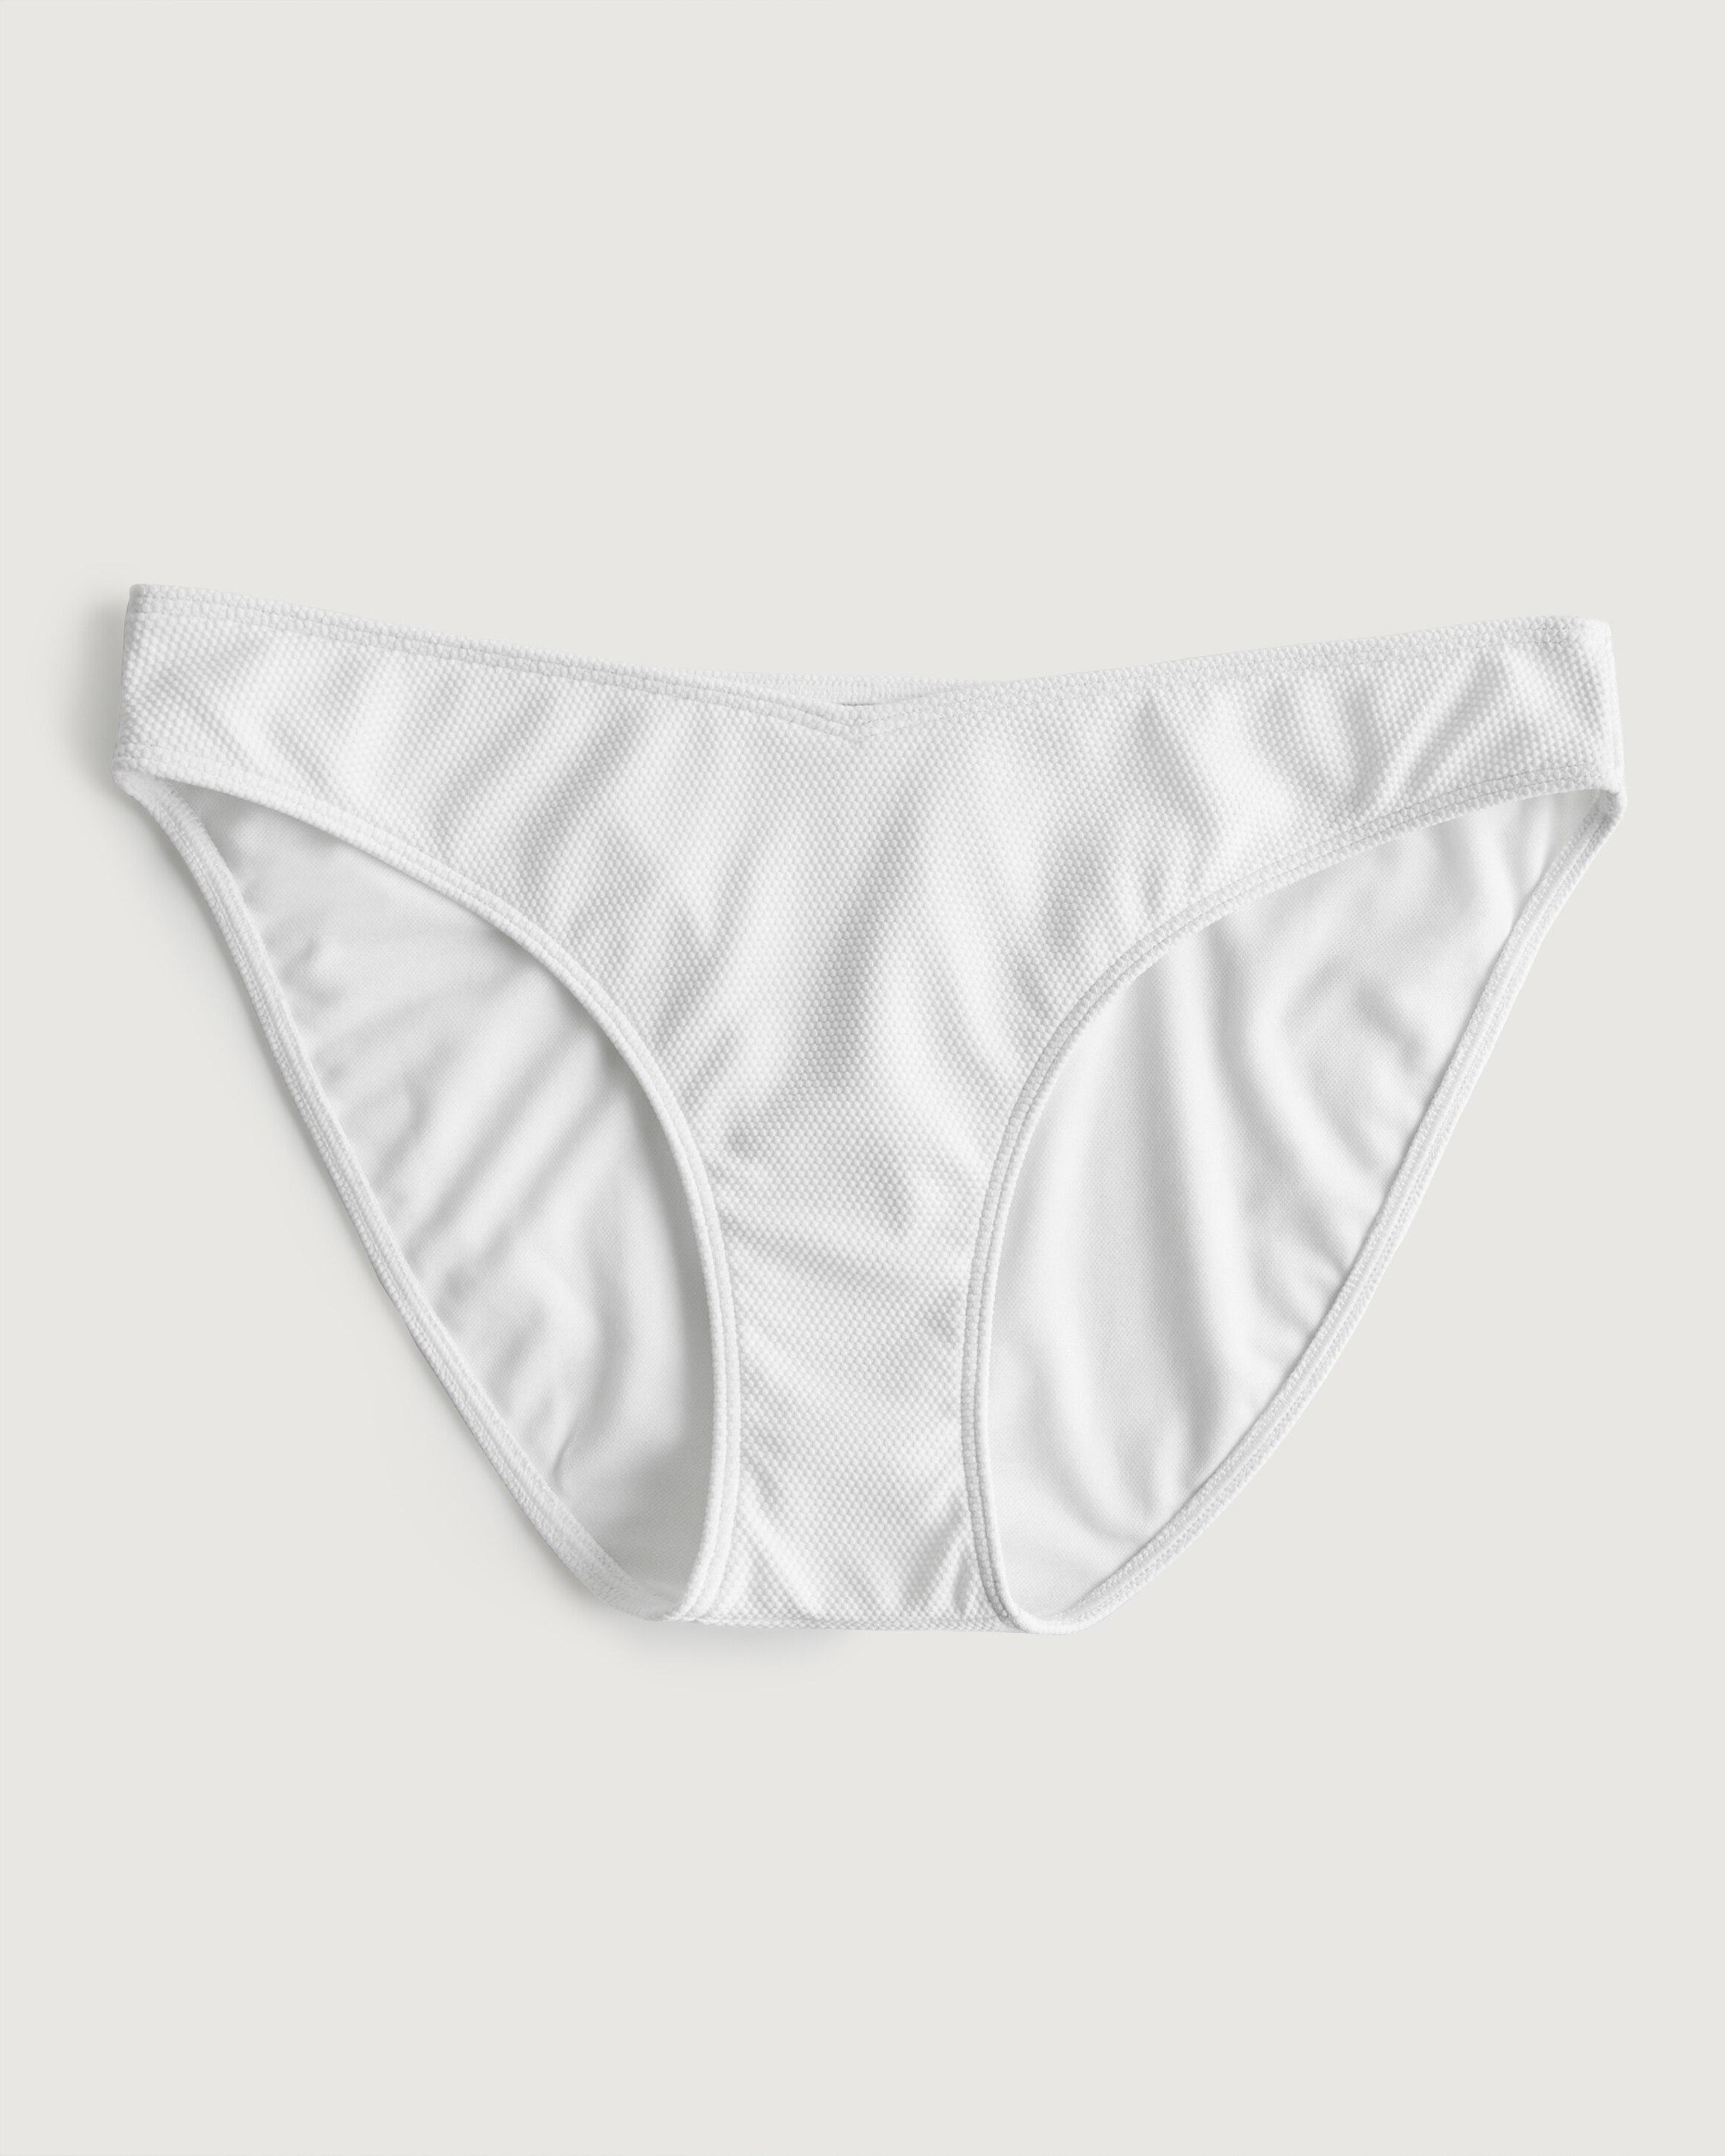 Hollister Gilly Hicks Pique Bikini Bottom in White | Lyst UK